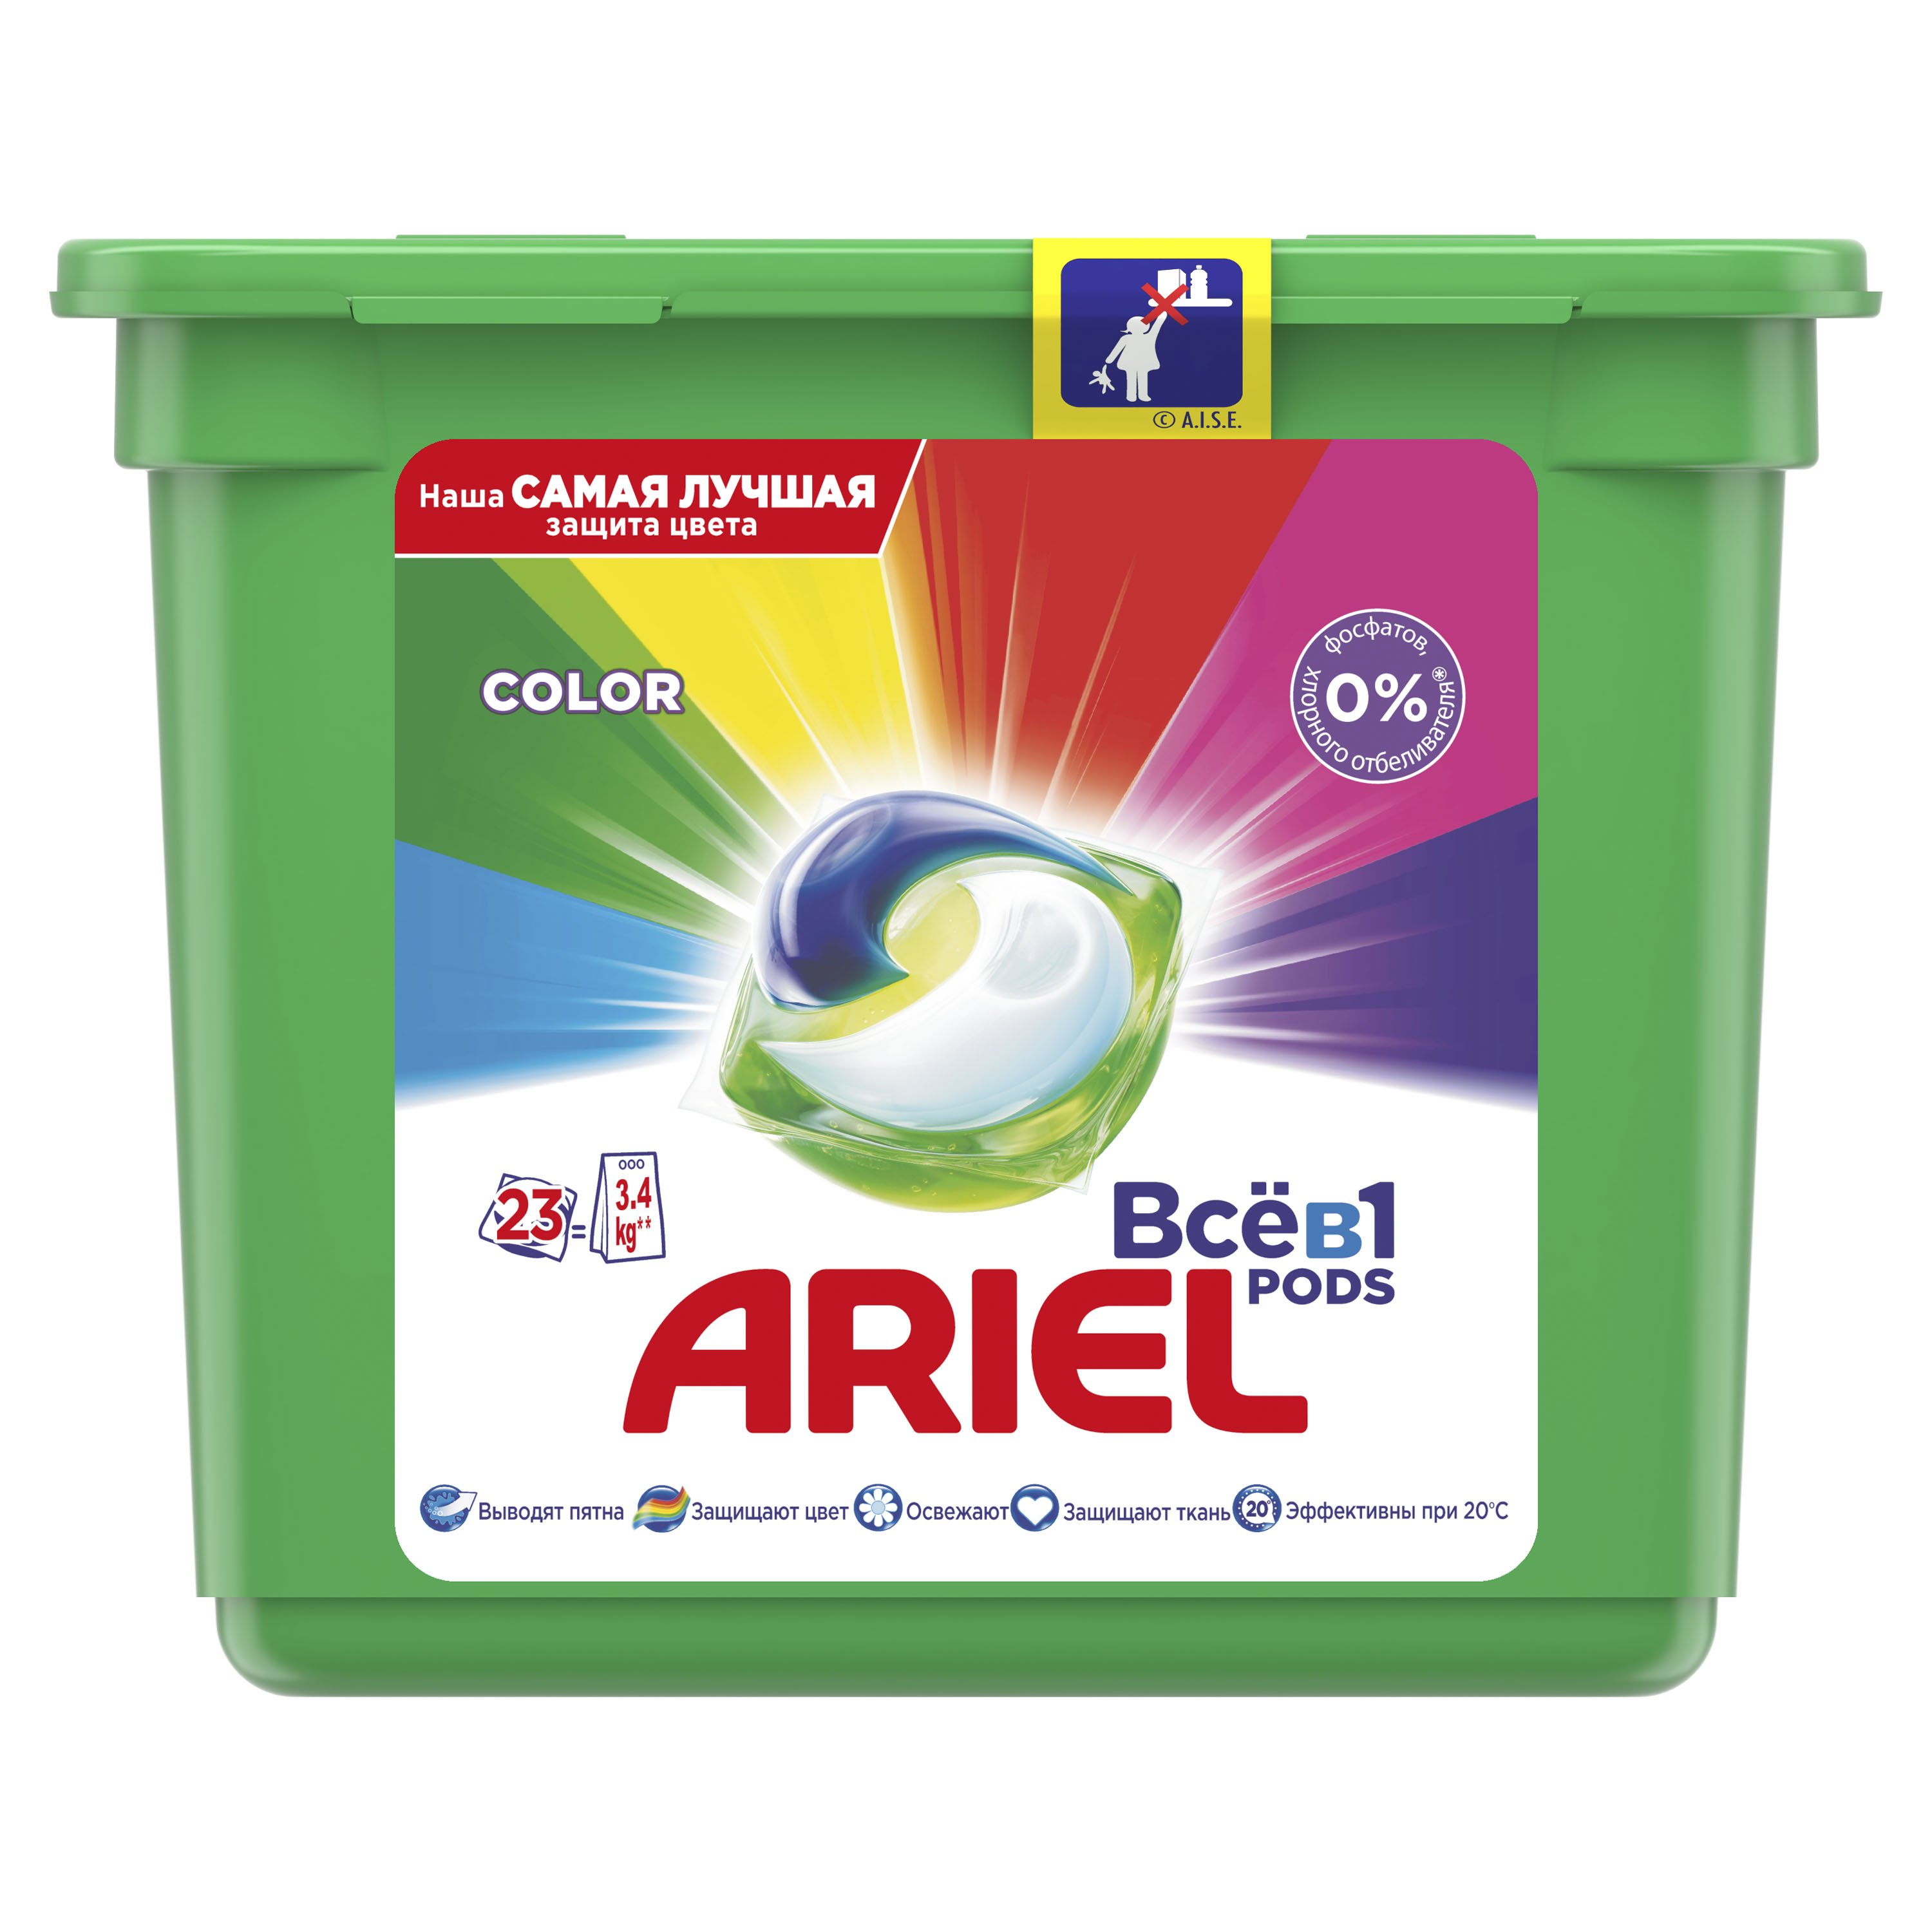 Капсулы для стирки Ariel Pods Все-в-1 Color, для цветных тканей, 23 шт. - фото 1